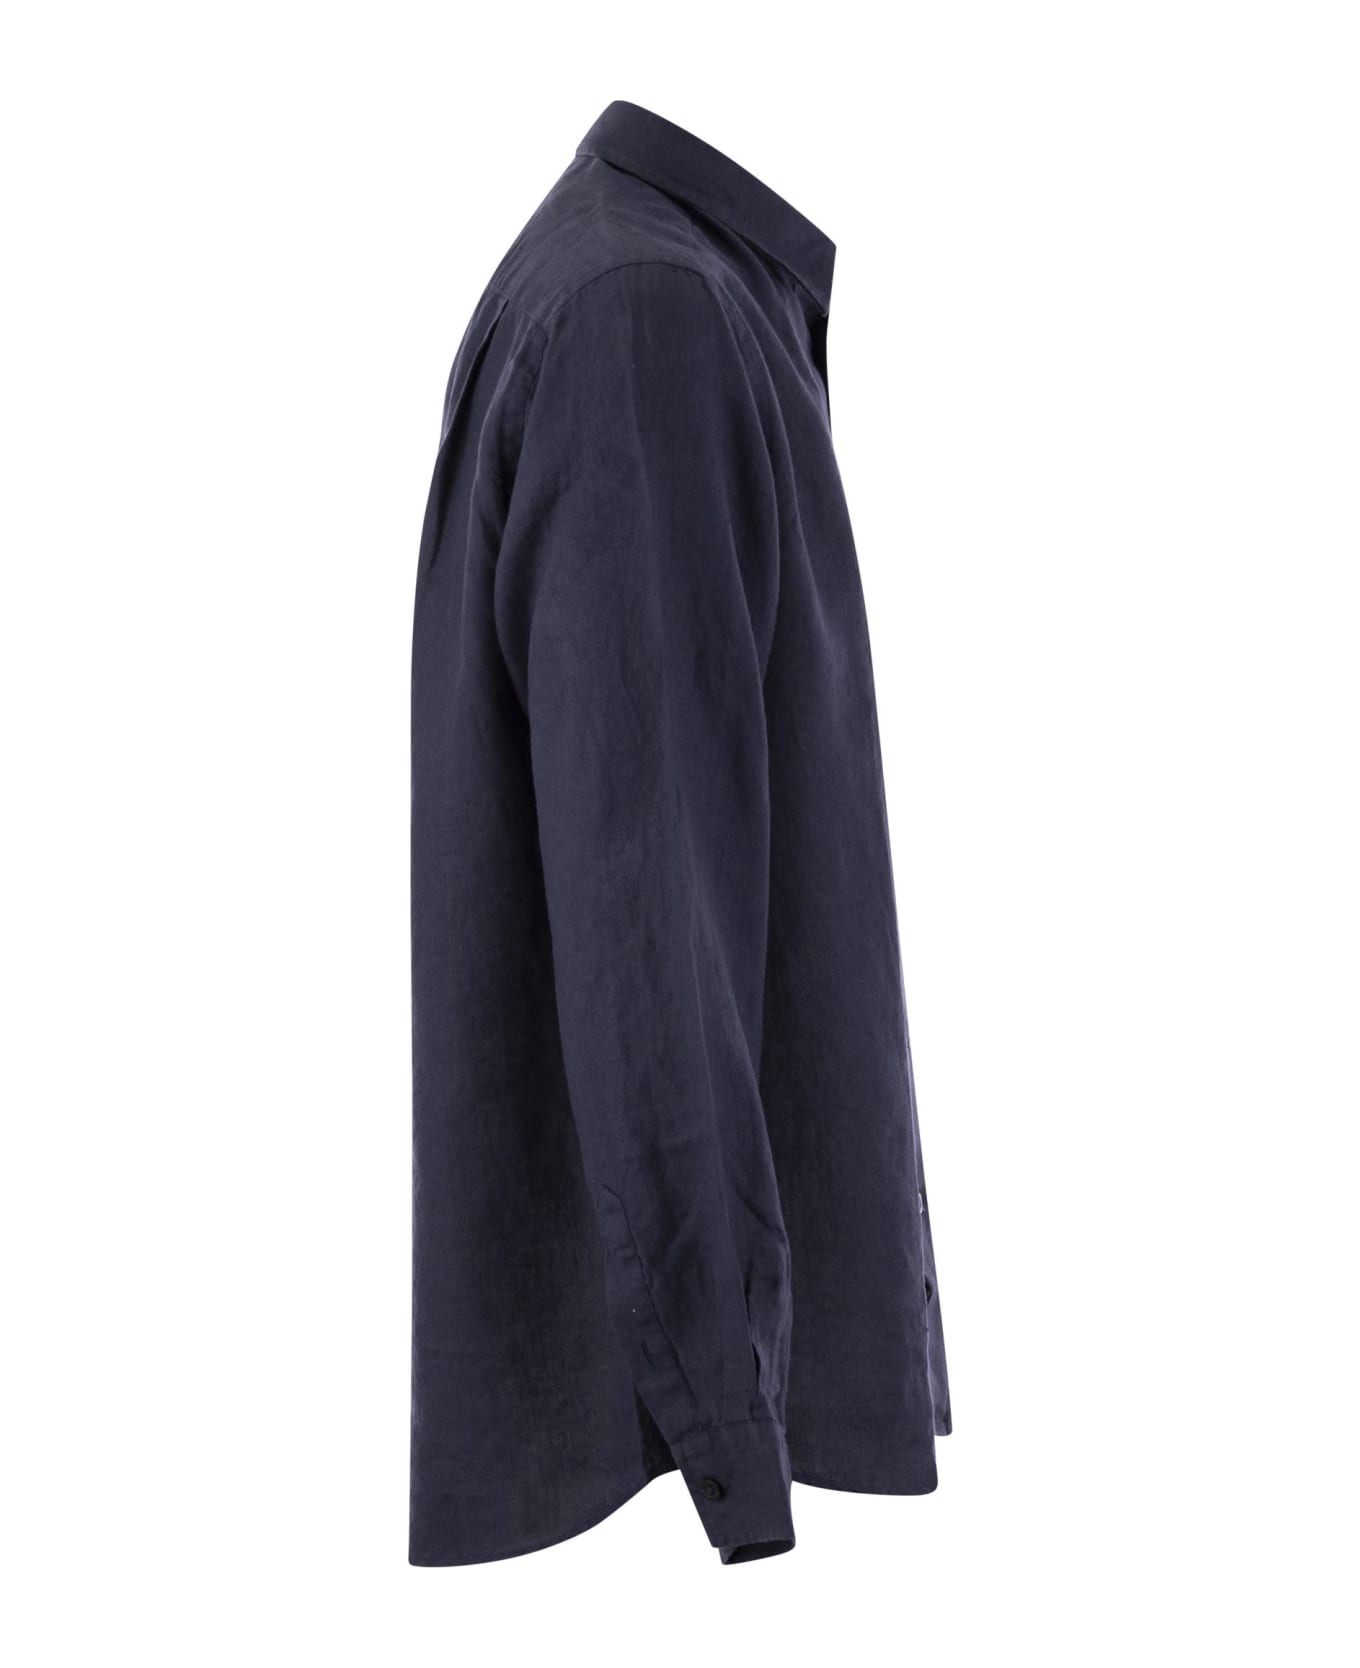 Vilebrequin Long-sleeved Linen Shirt - Marine Blue